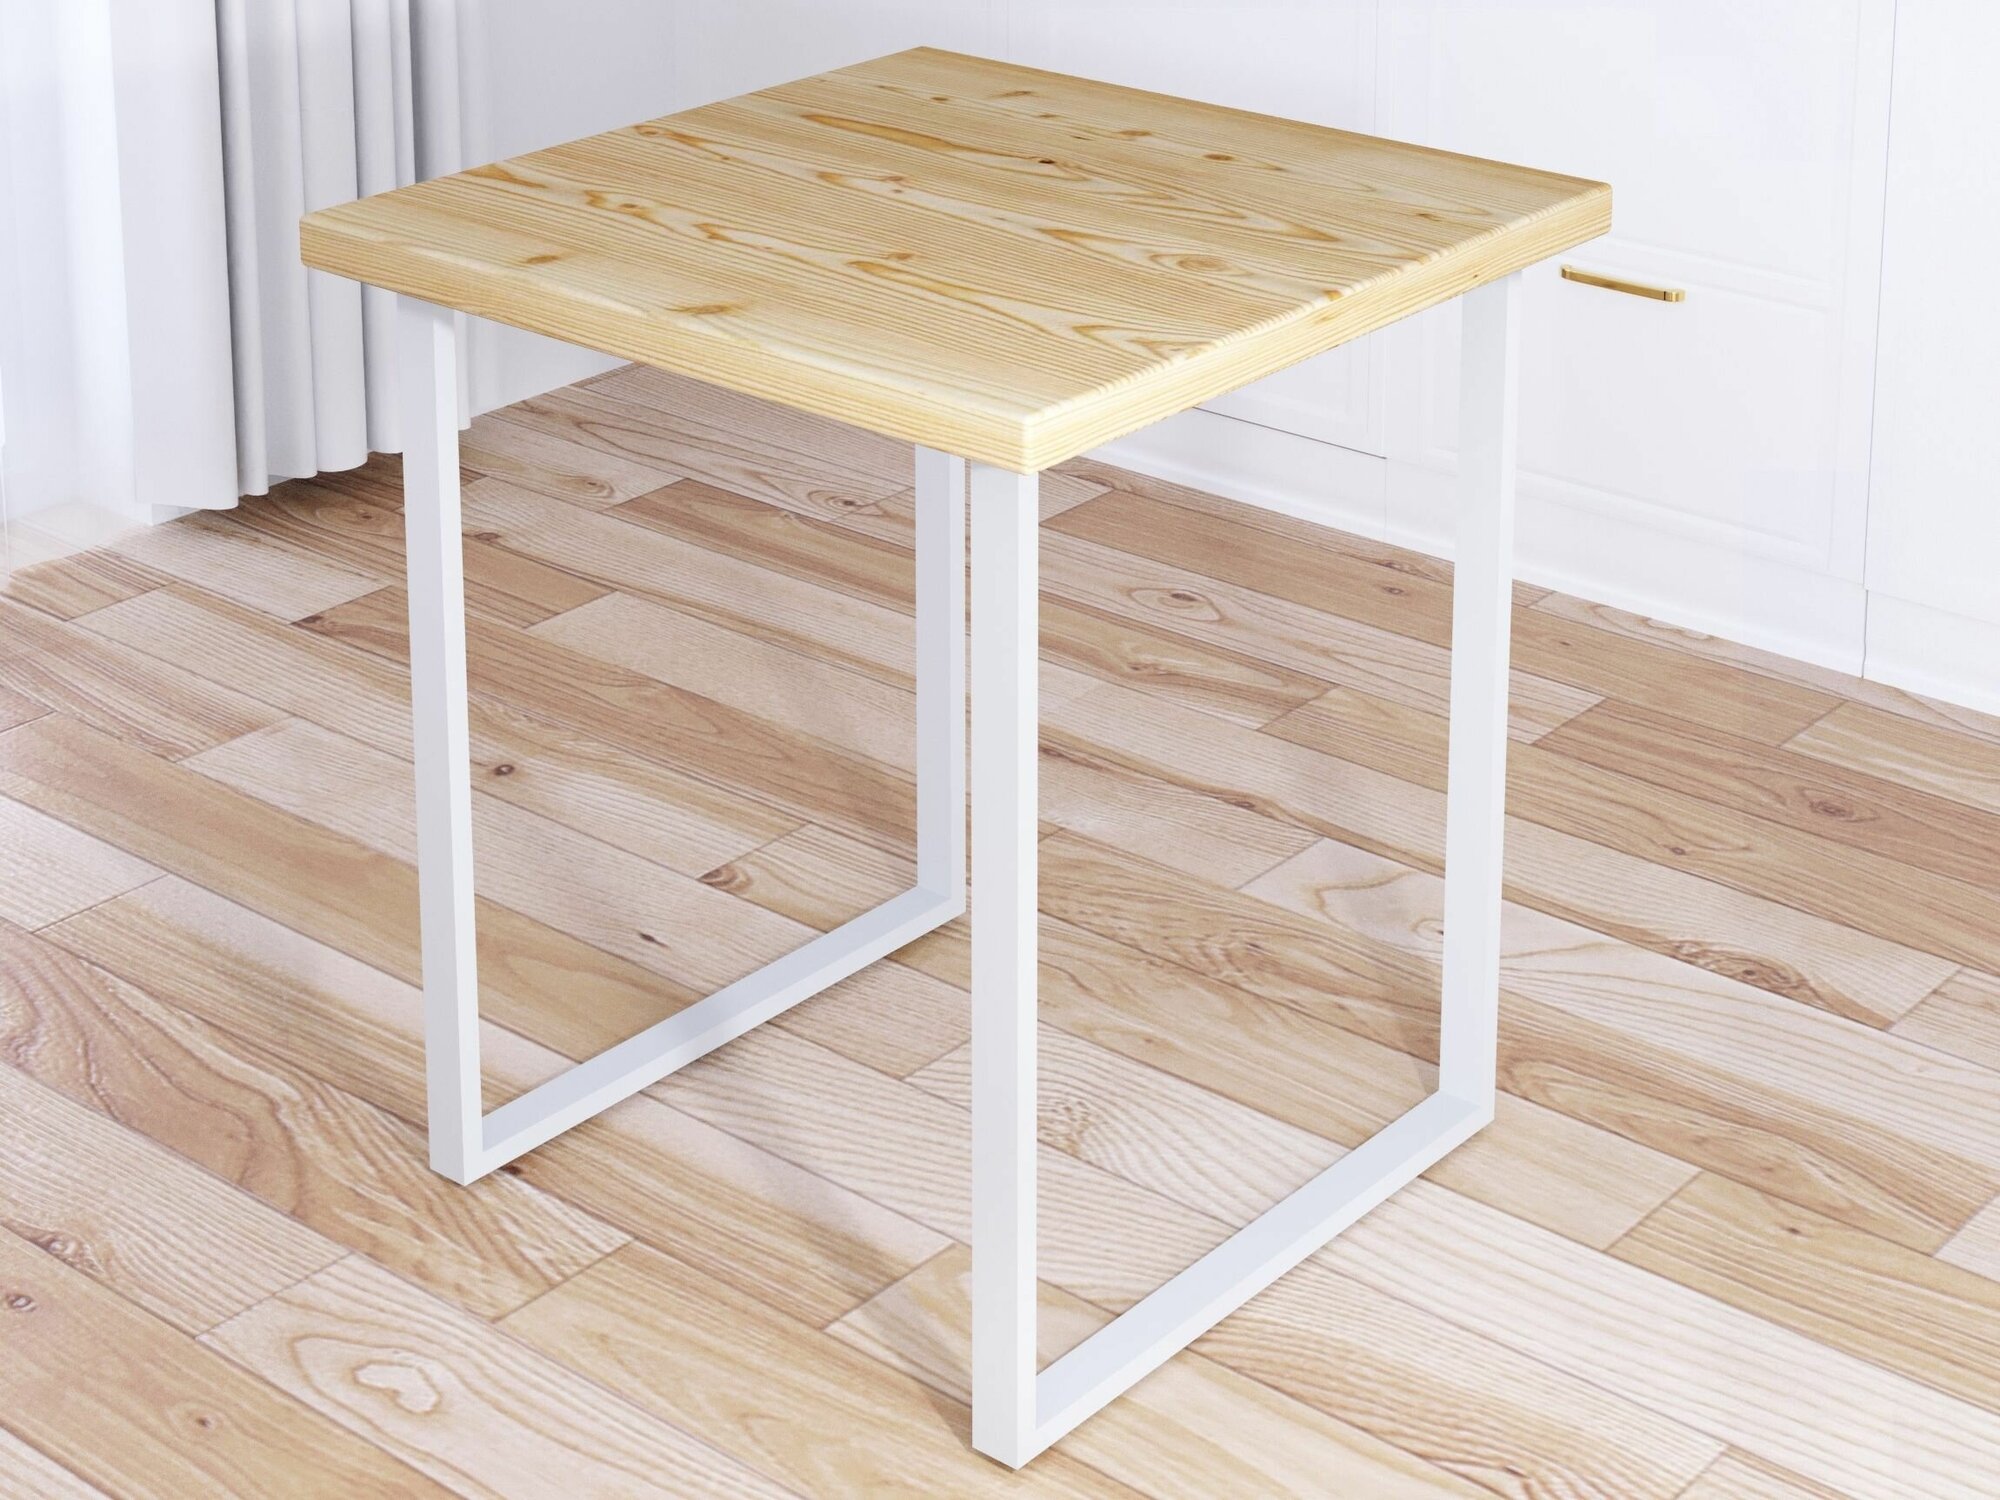 Стол кухонный Loft квадратный с лакированной столешницей из массива сосны 40 мм и белыми металлическими ножками, 60х60х75 см